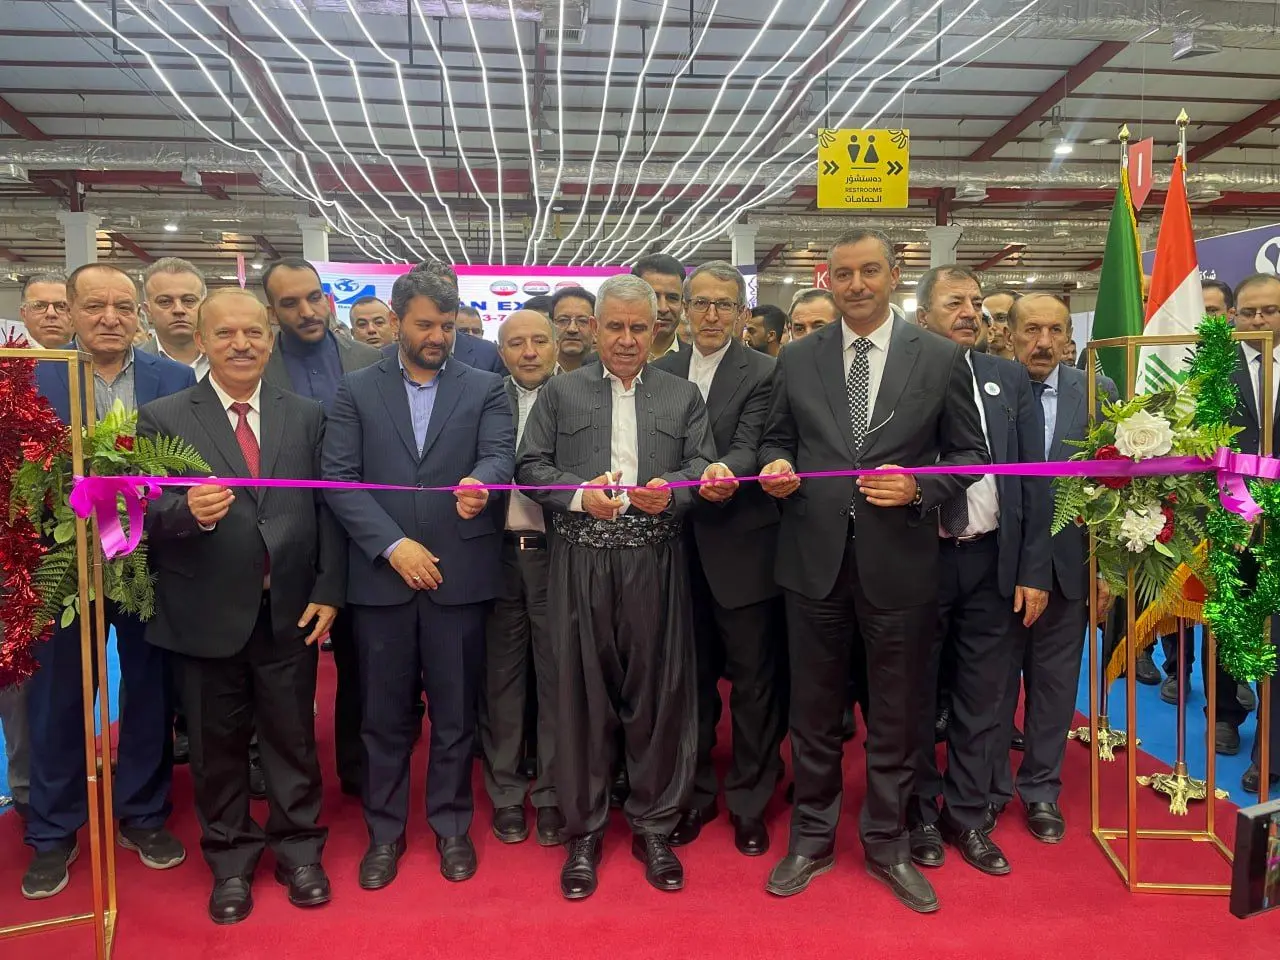 نمایشگاه اختصاصی جمهوری اسلامی ایران در سلیمانیه عراق آغاز به کار کرد